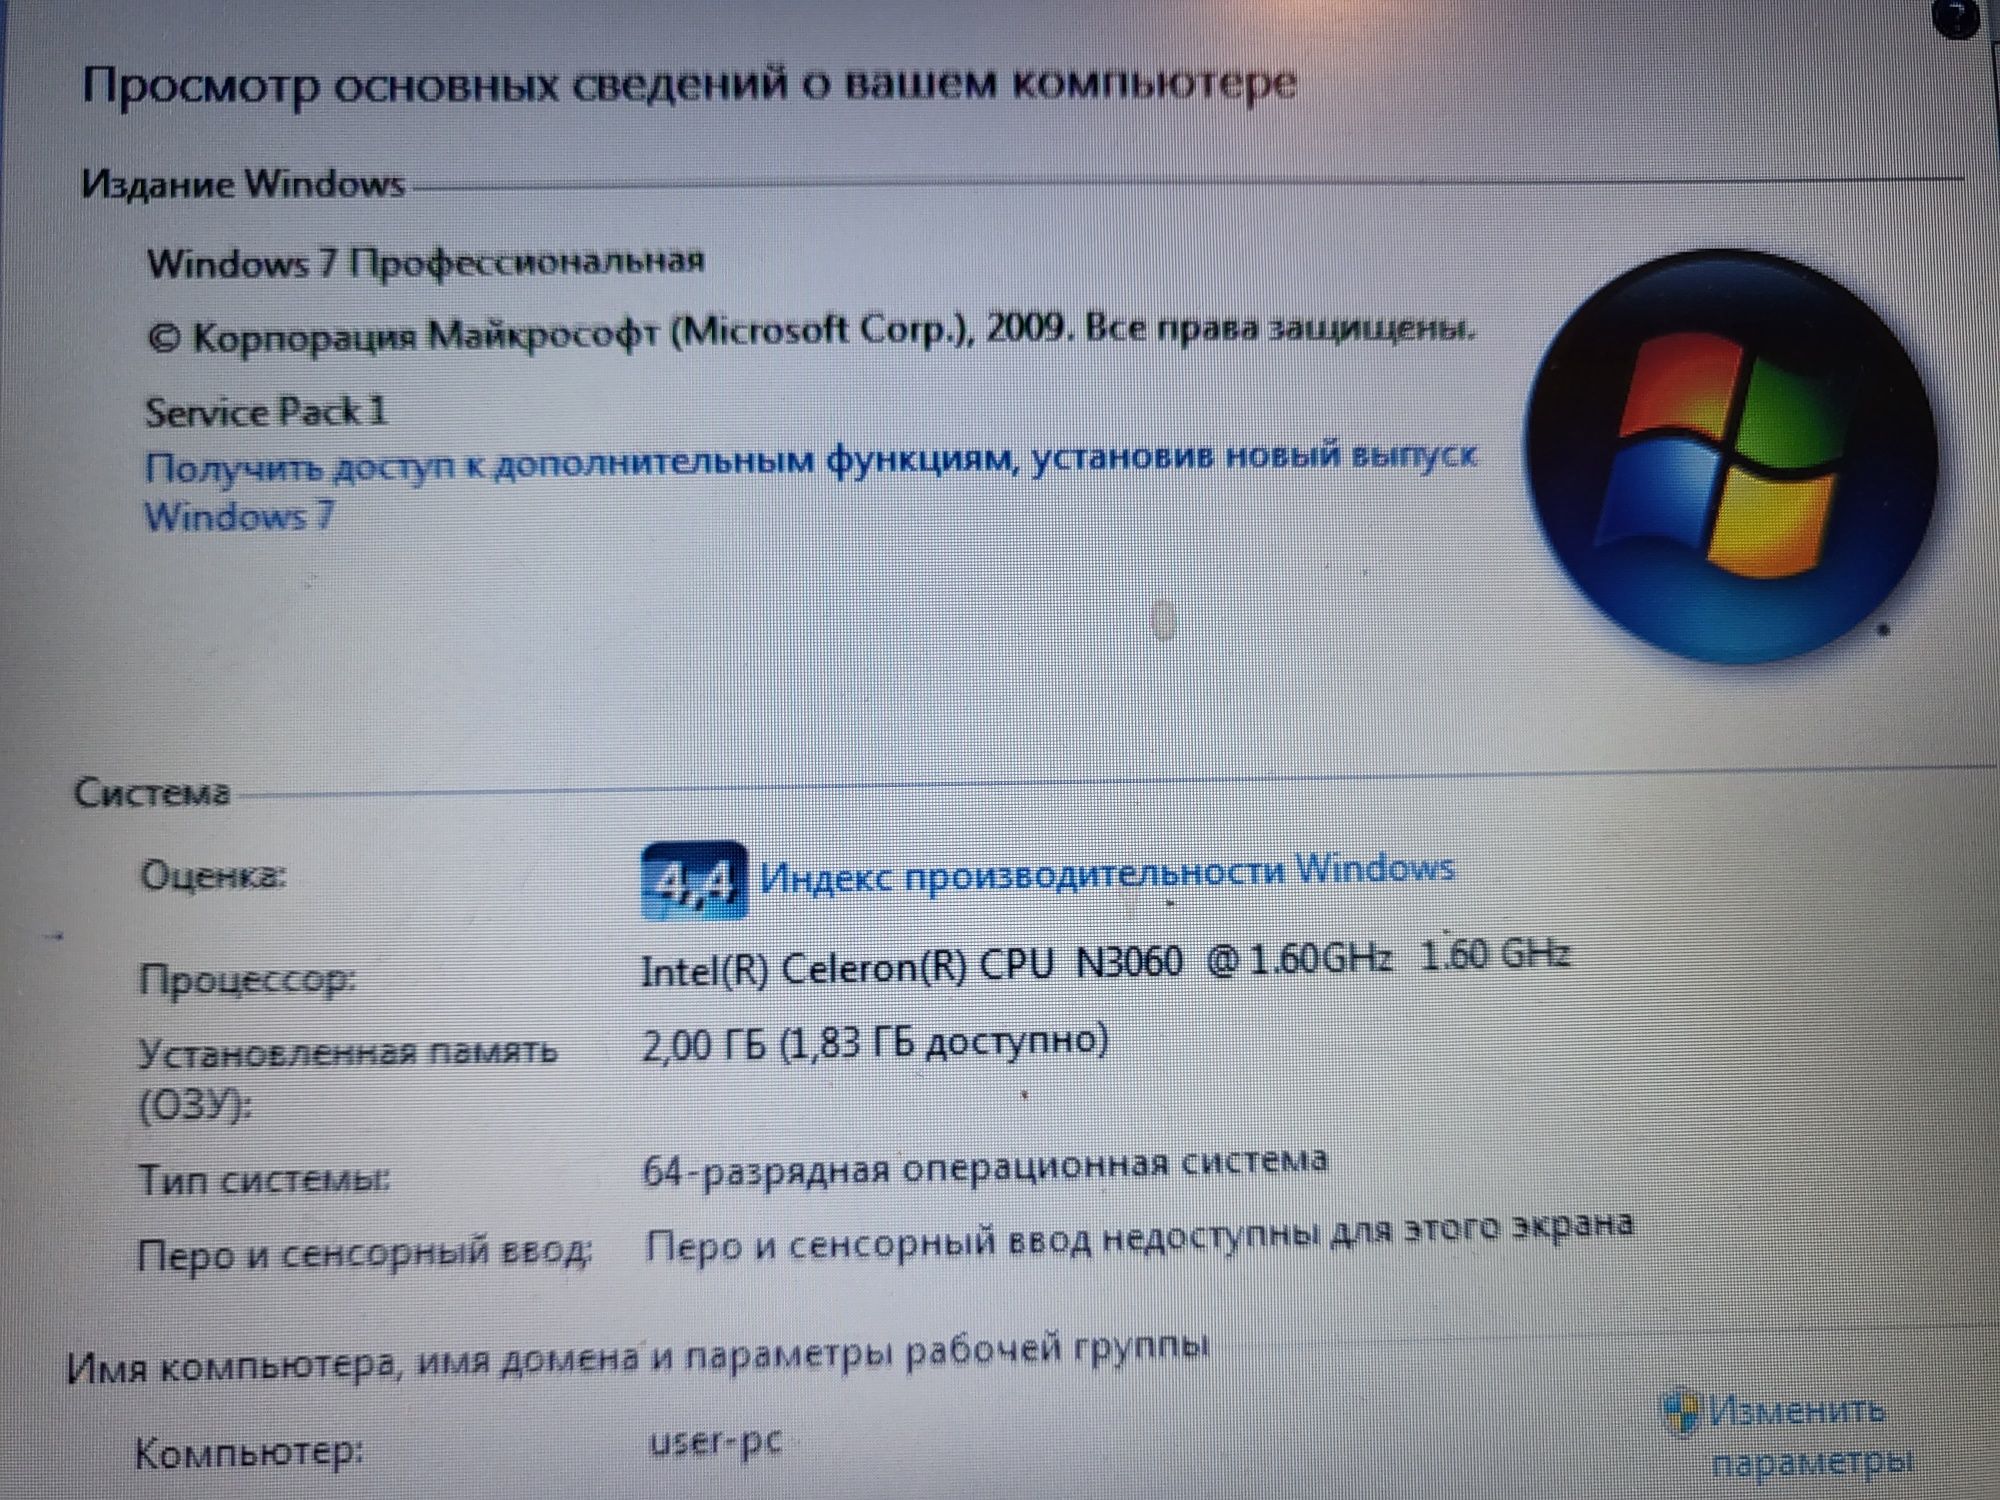 Ноутбук Acer, операционная система Windows 7 профессиональная